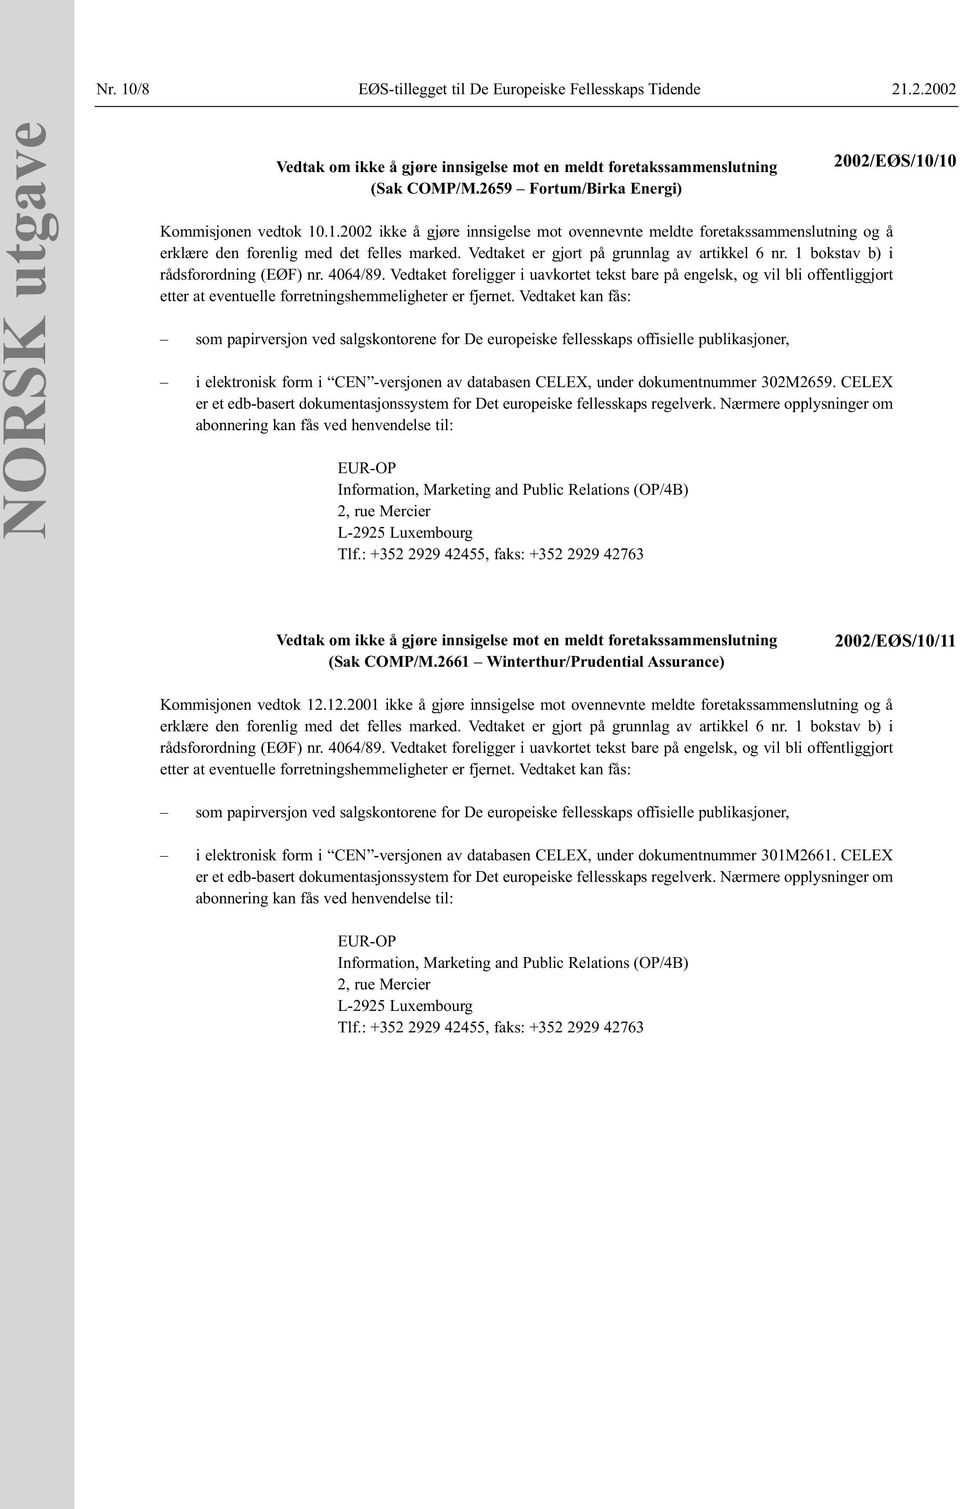 2.2002 NORSK utgave (Sak COMP/M.2659 Fortum/Birka Energi) Kommisjonen vedtok 10